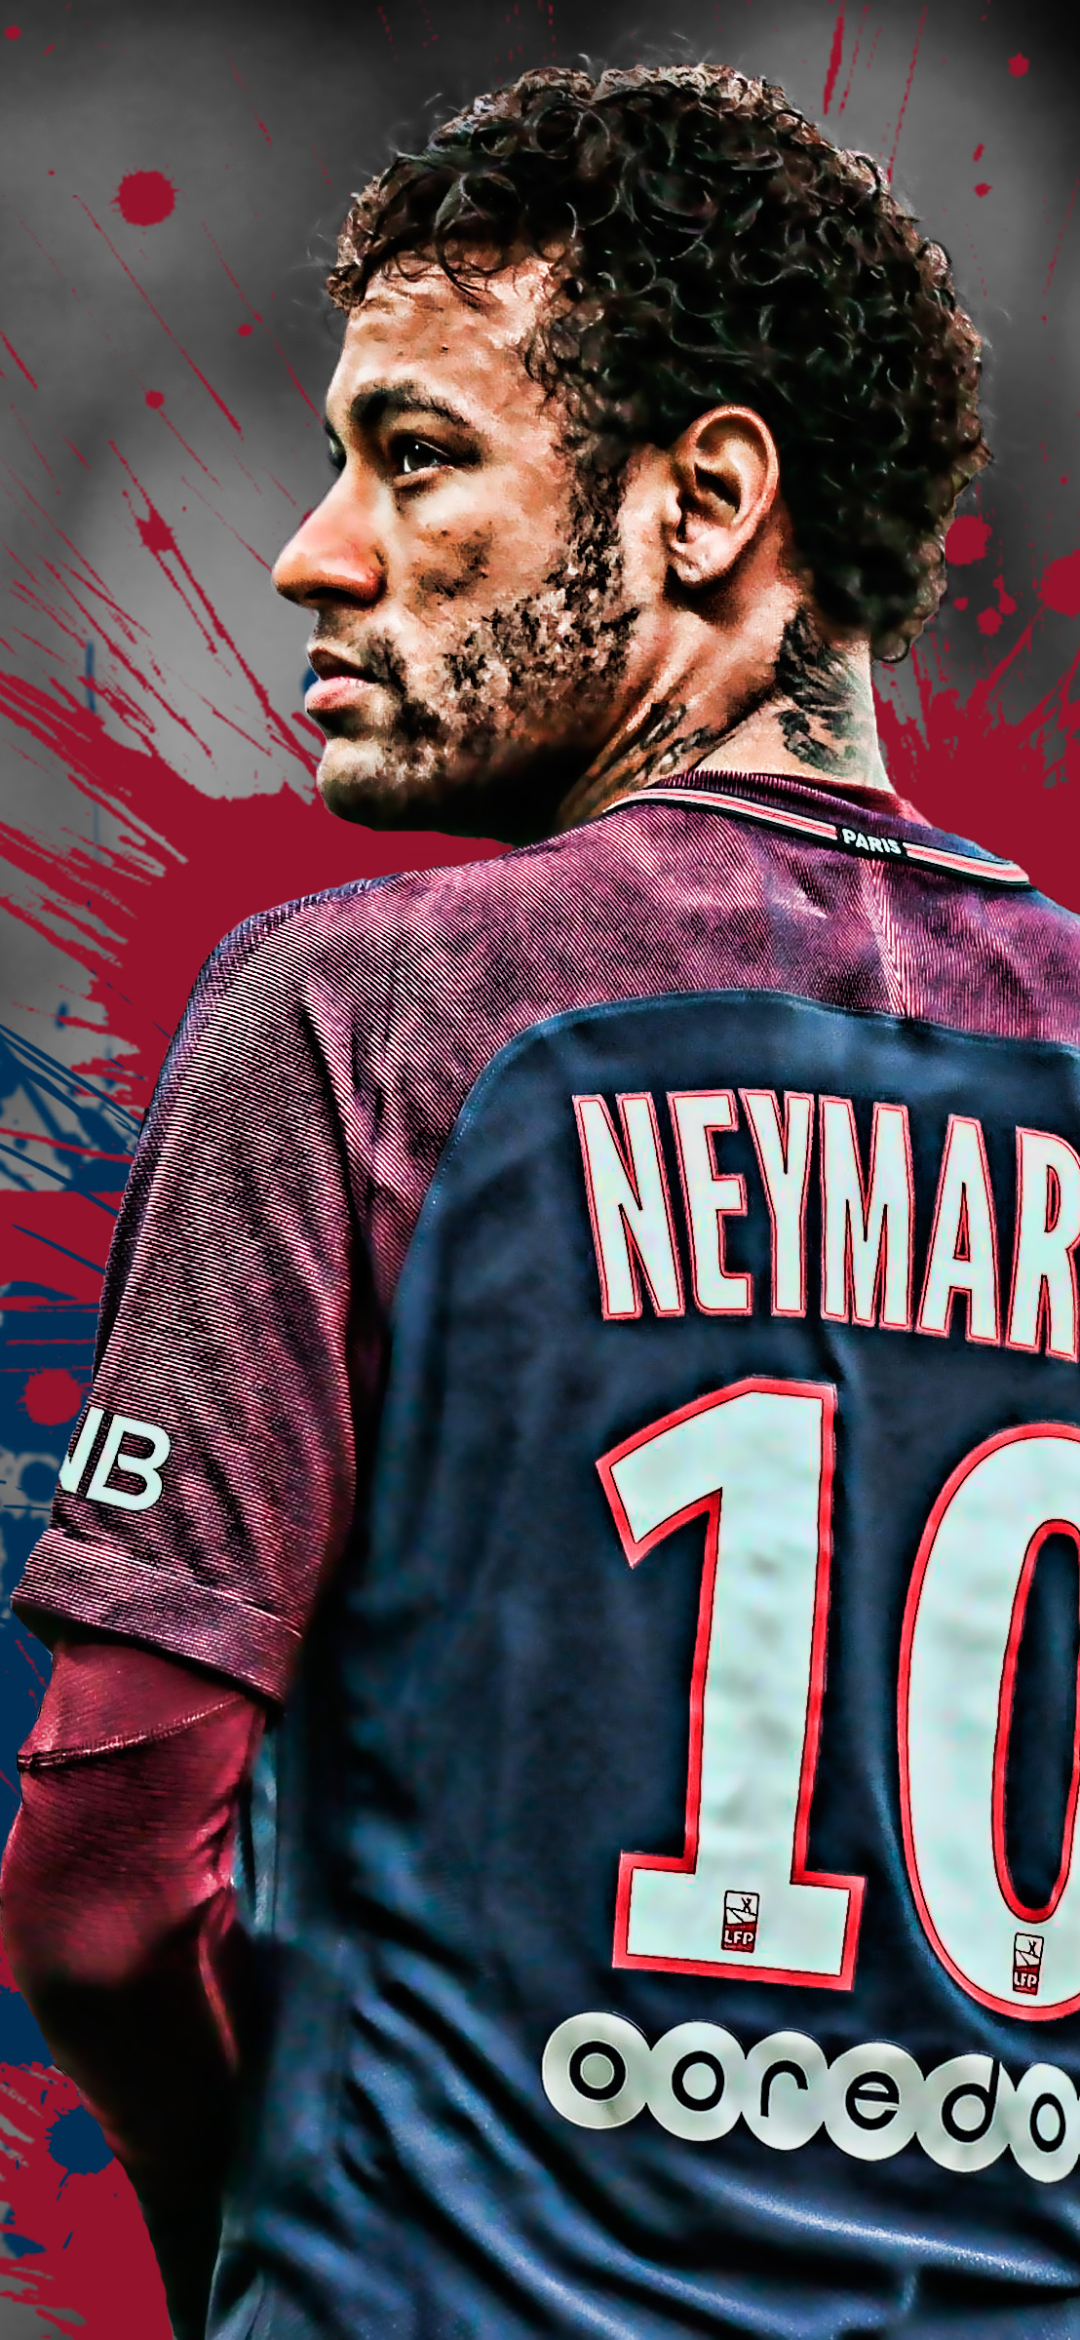 Neymar Phone Wallpaper: Những hình nền điện thoại của Neymar làm cho màn hình của bạn trở nên đầy sức sống, sôi động và thú vị hơn bao giờ hết. Vào xem ngay để tìm kiếm một hình nền yêu thích cho điện thoại của bạn và cùng nhìn ngắm Neymar trên màn hình của mình mỗi lần mở khóa điện thoại!